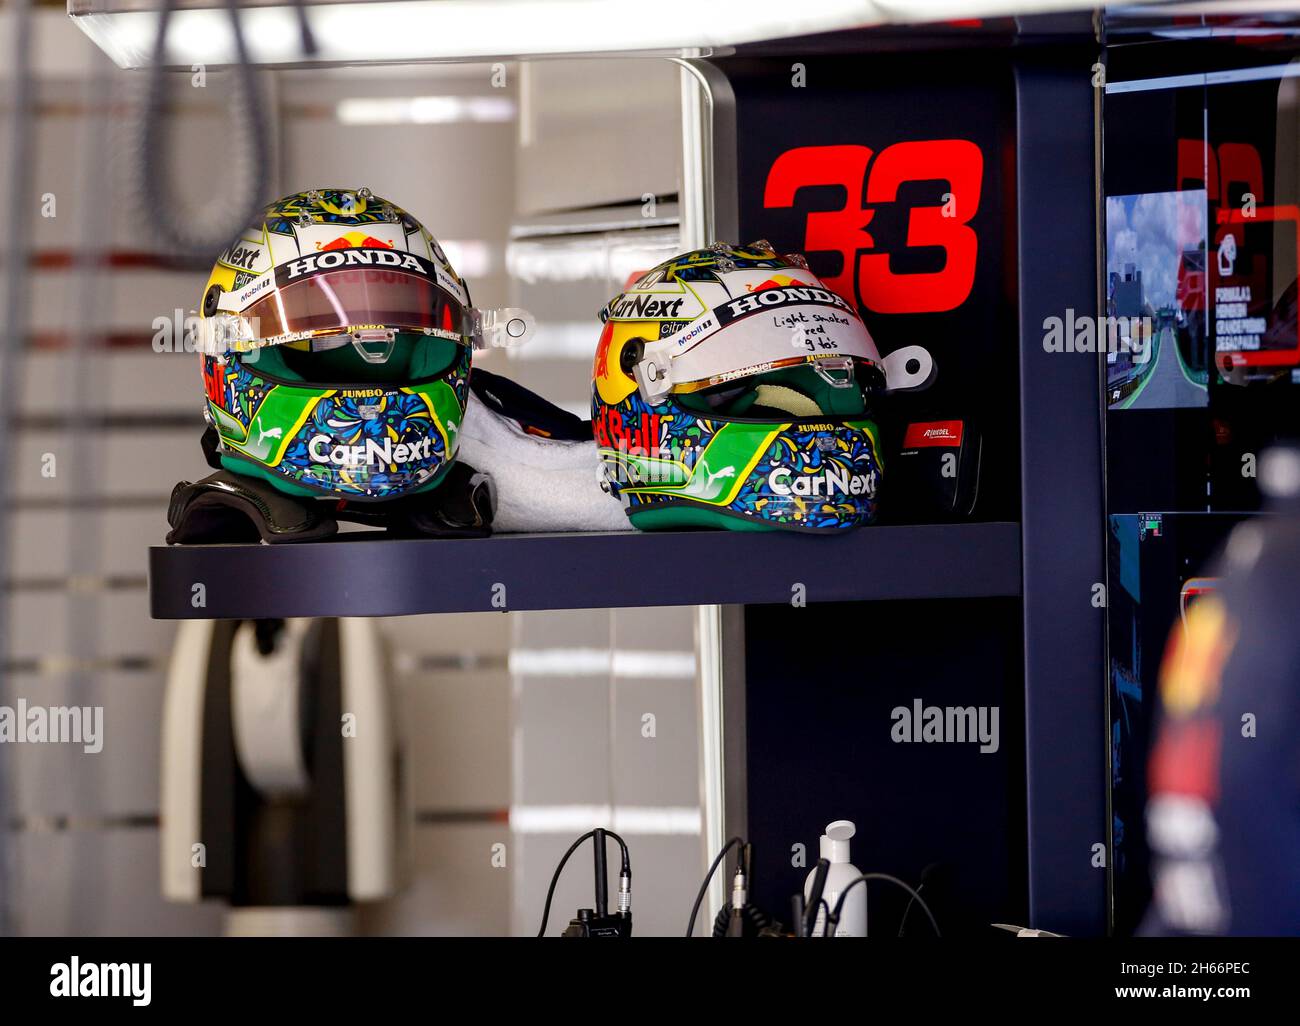 Sao Paulo, Brésil.13 novembre 2021.Casque de # 33 Max Verstappen (NED, Red  Bull Racing), Grand Prix de F1 du Brésil à Autodromo Jose Carlos Pace le 13  novembre 2021 à Sao Paulo,